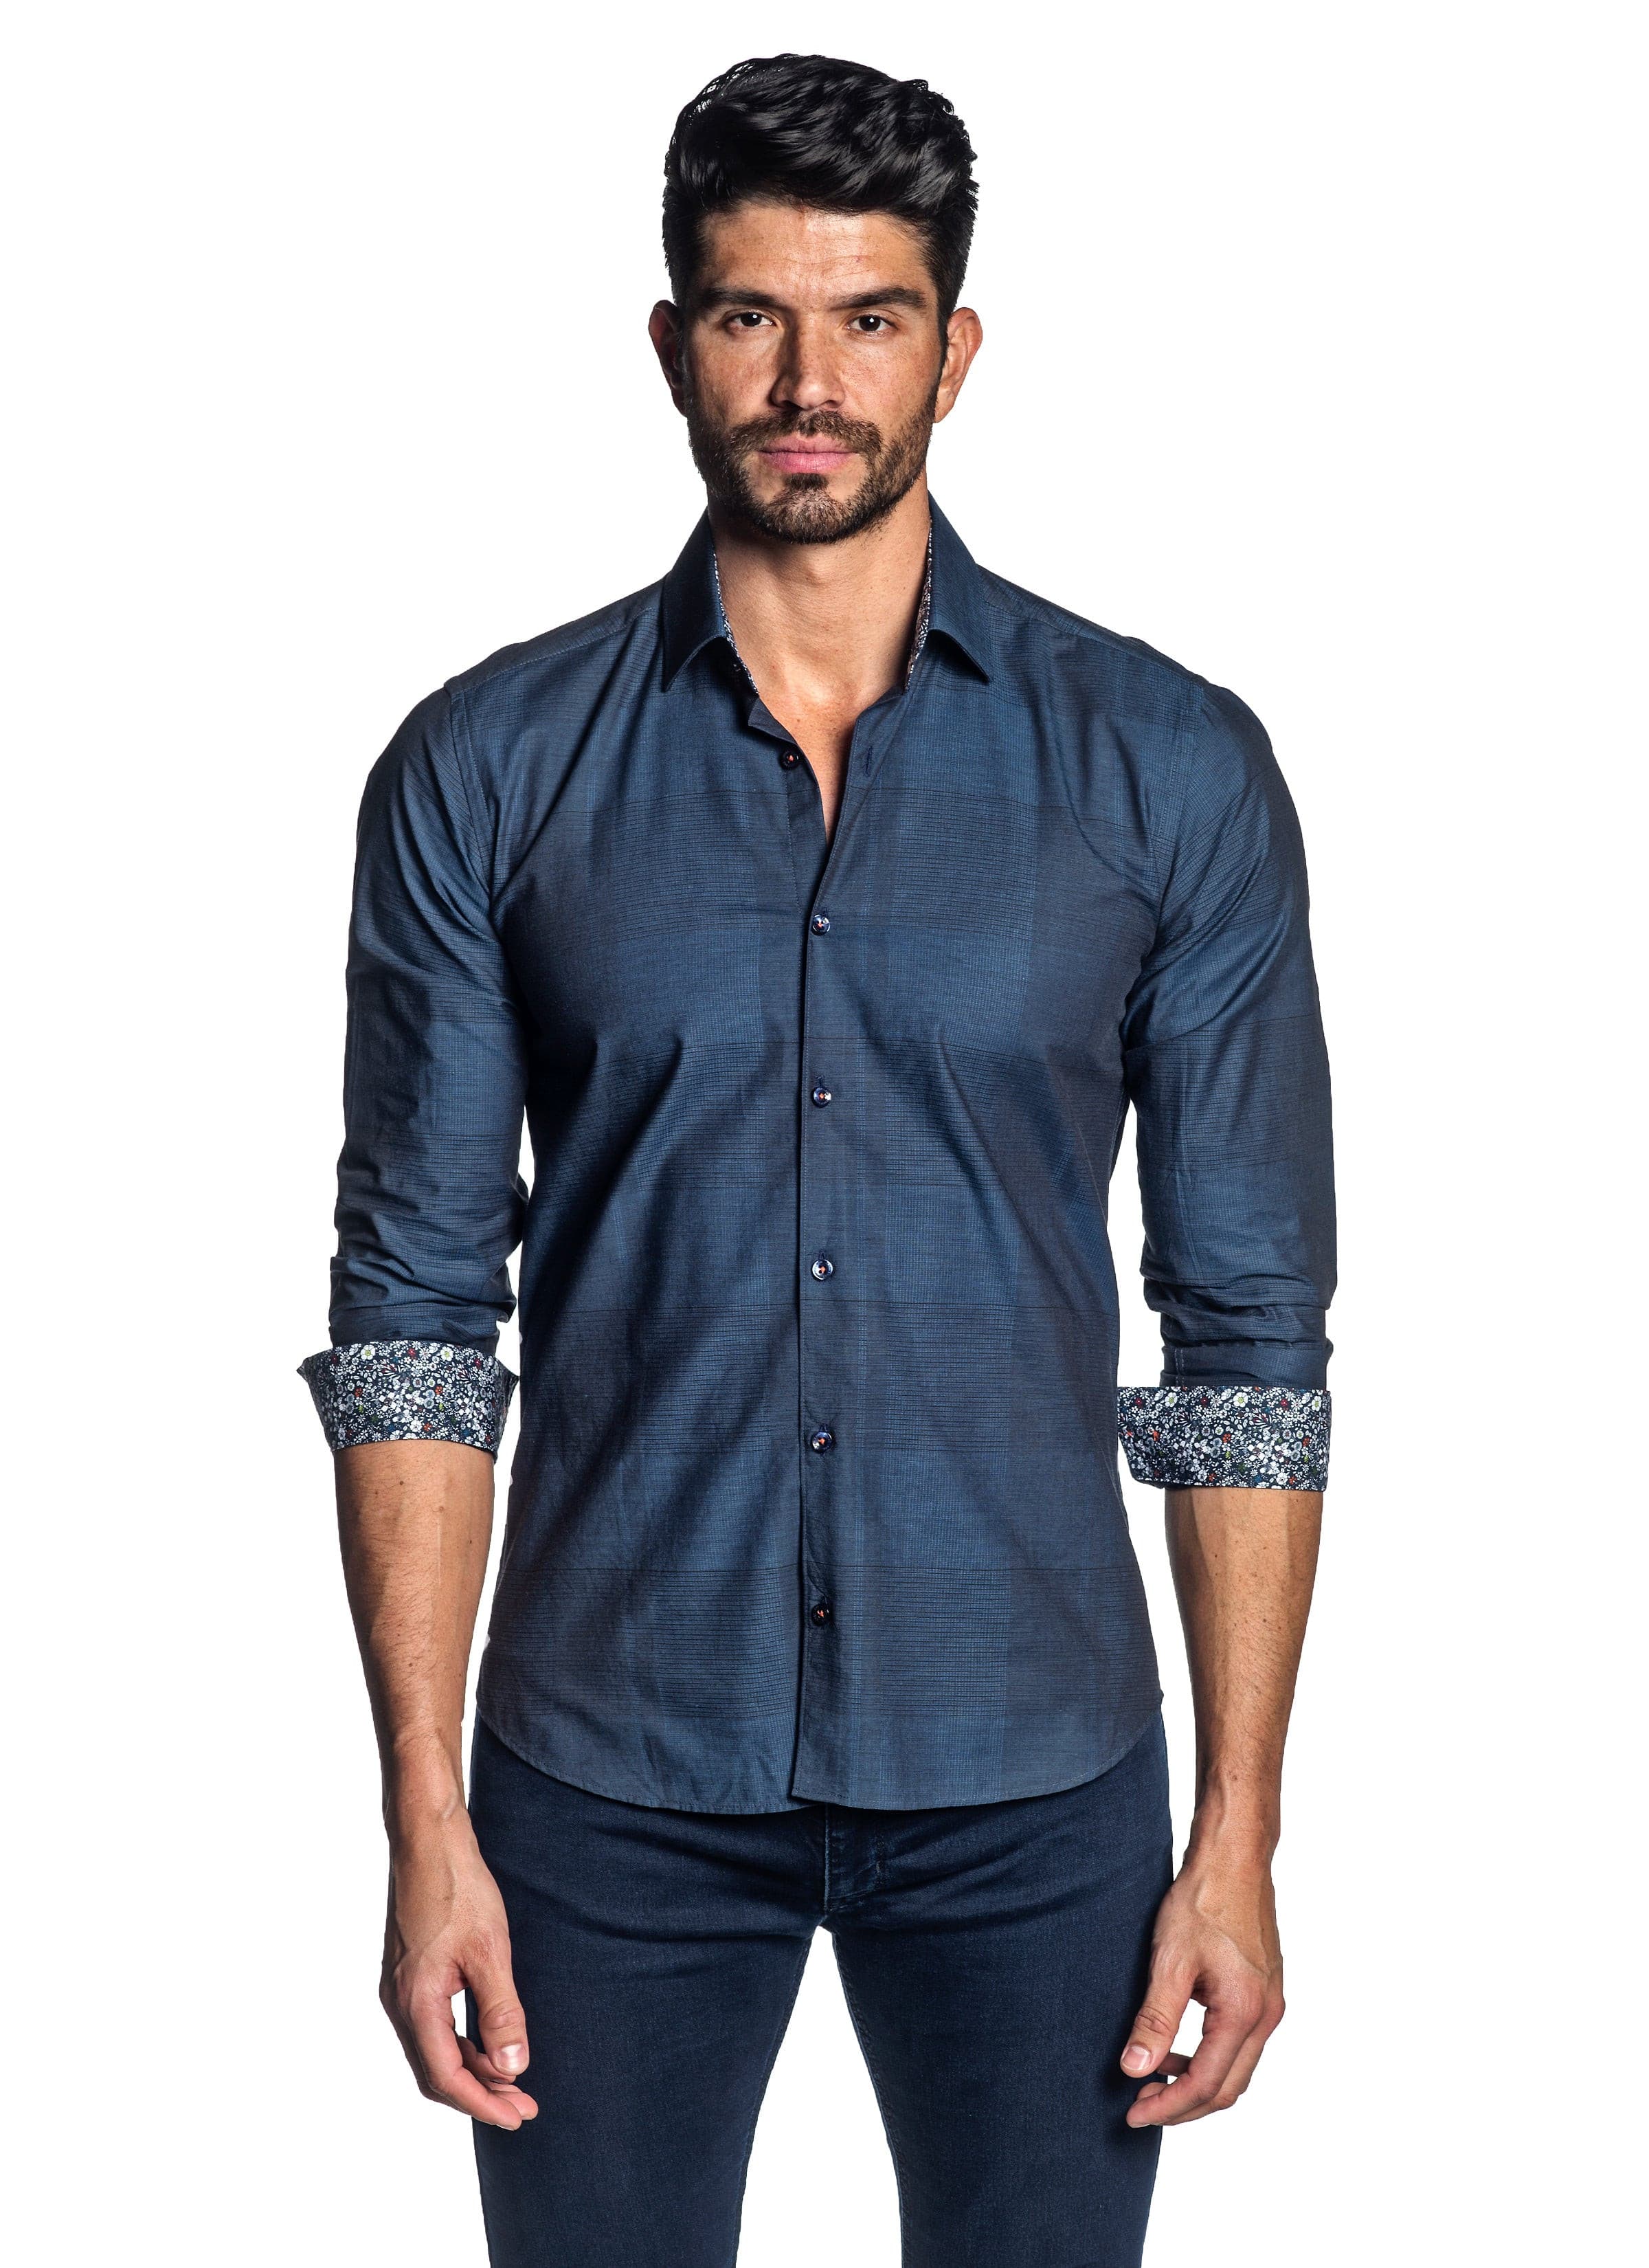 Shirt: Buy VOI Jeans Men's Printed Dark Blue Aop Cotton Slim Fit Casual  Shirt | VOI Jeans – Voi Jeans